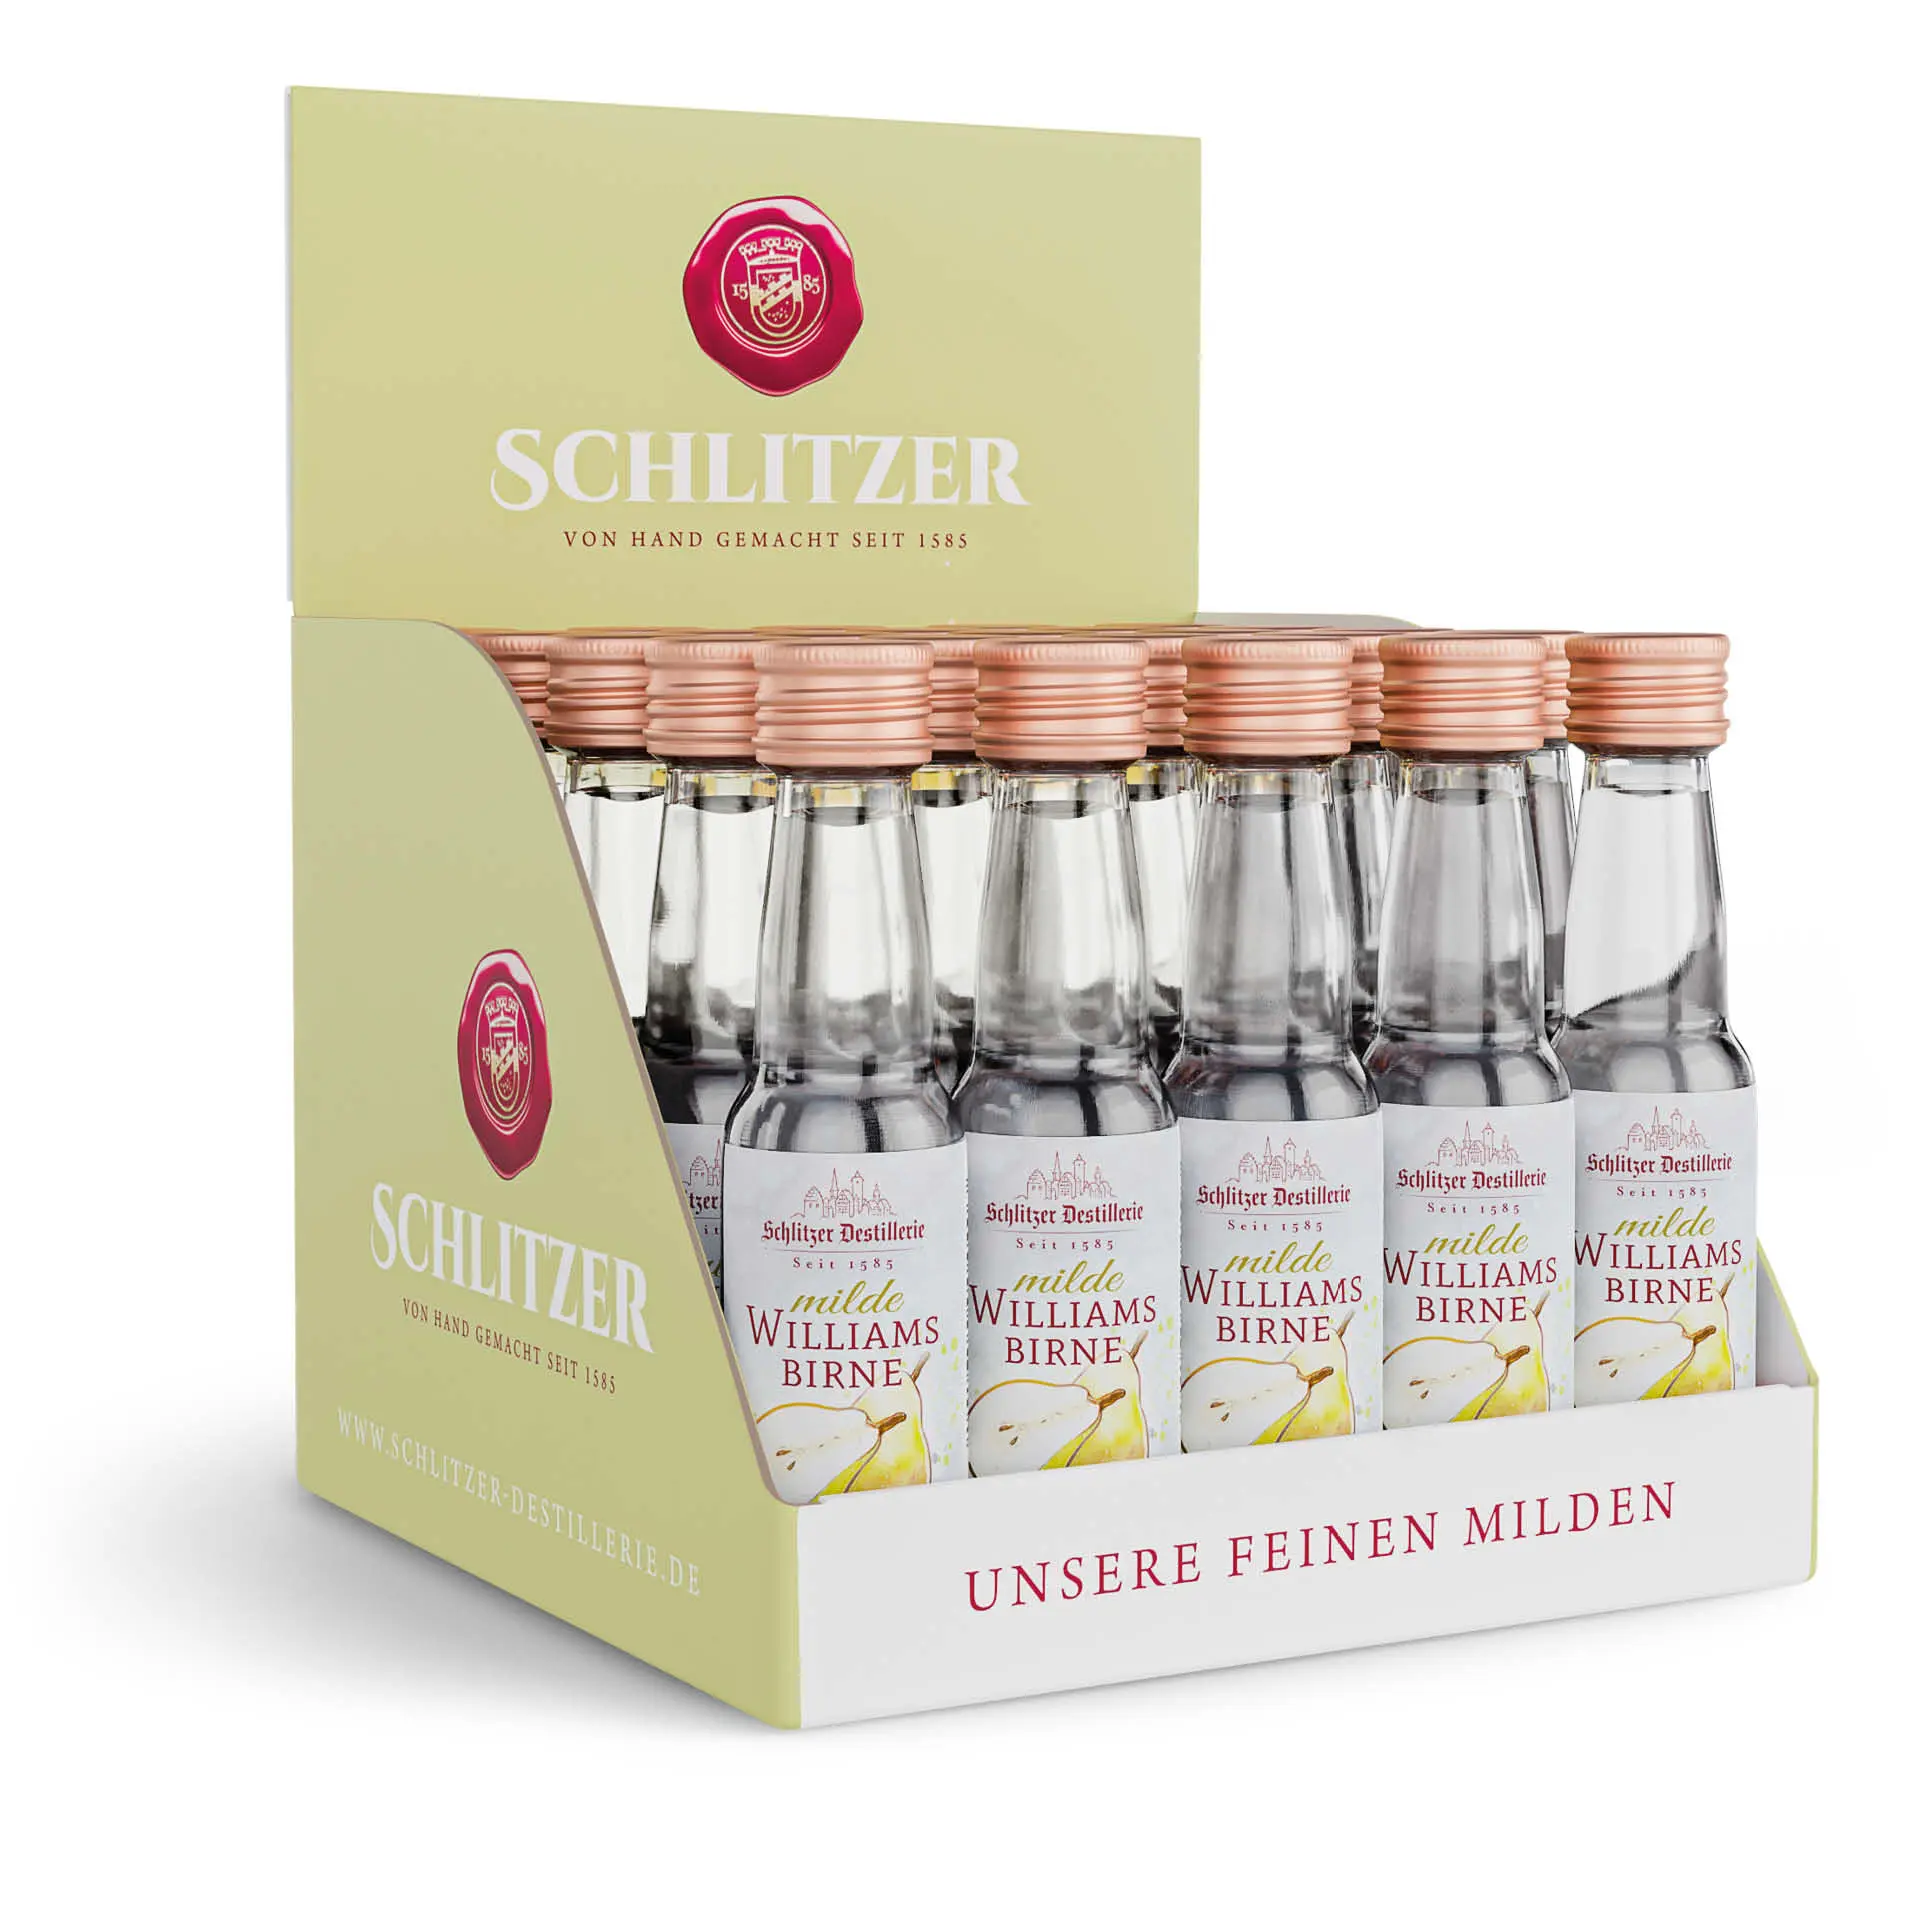 25 x 0,02 Liter milde Williams Birne Minis, Spirituosen in kleinen Flaschen mit Schraubverschluss